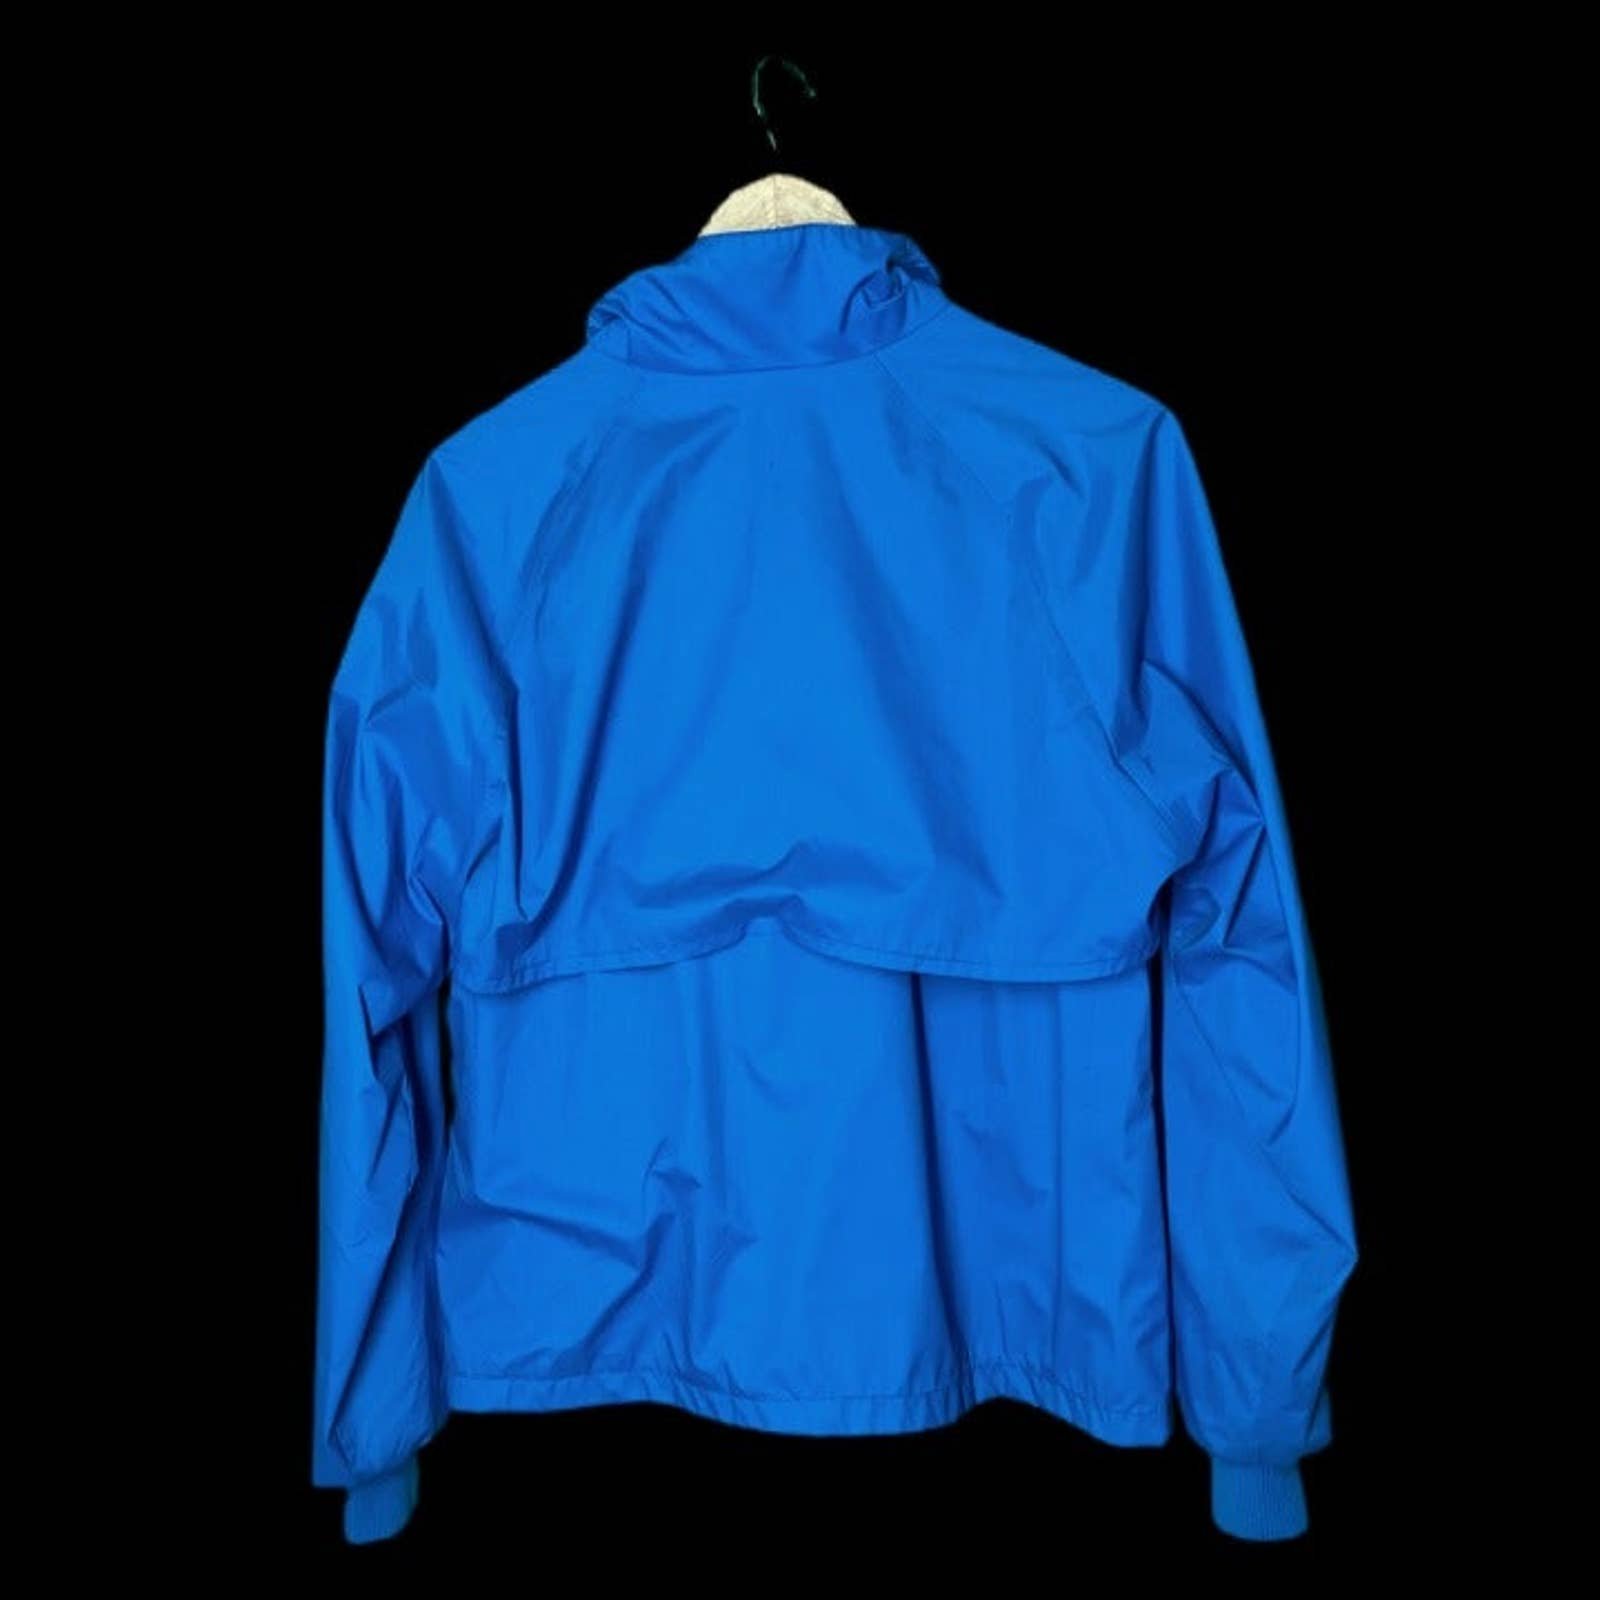 Comfortable Helly Hansen vintage windbreaker jacket - Medium - 90s Pjqr0PftN no tax